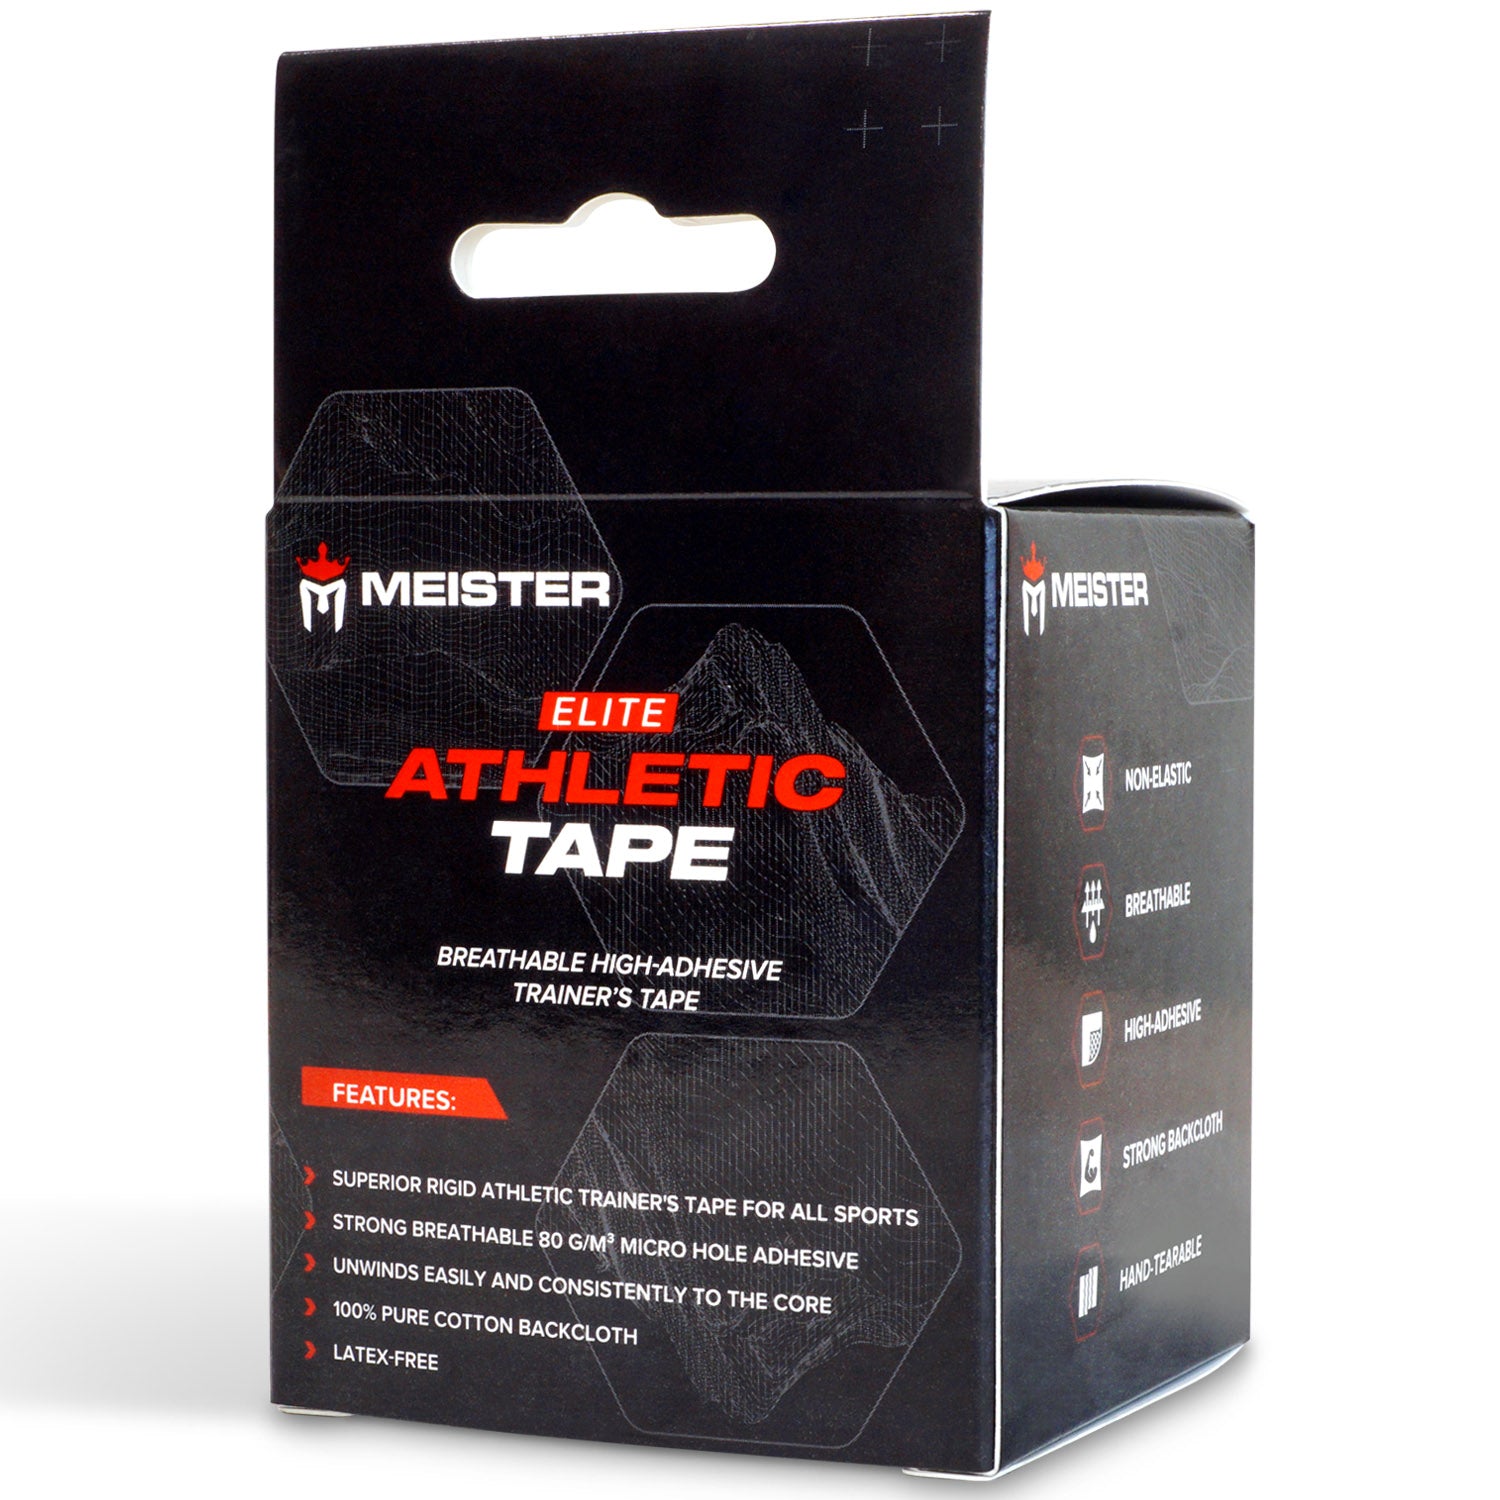 Meister Elite Porous Athletic Tape - 2 Roll Pack - Black